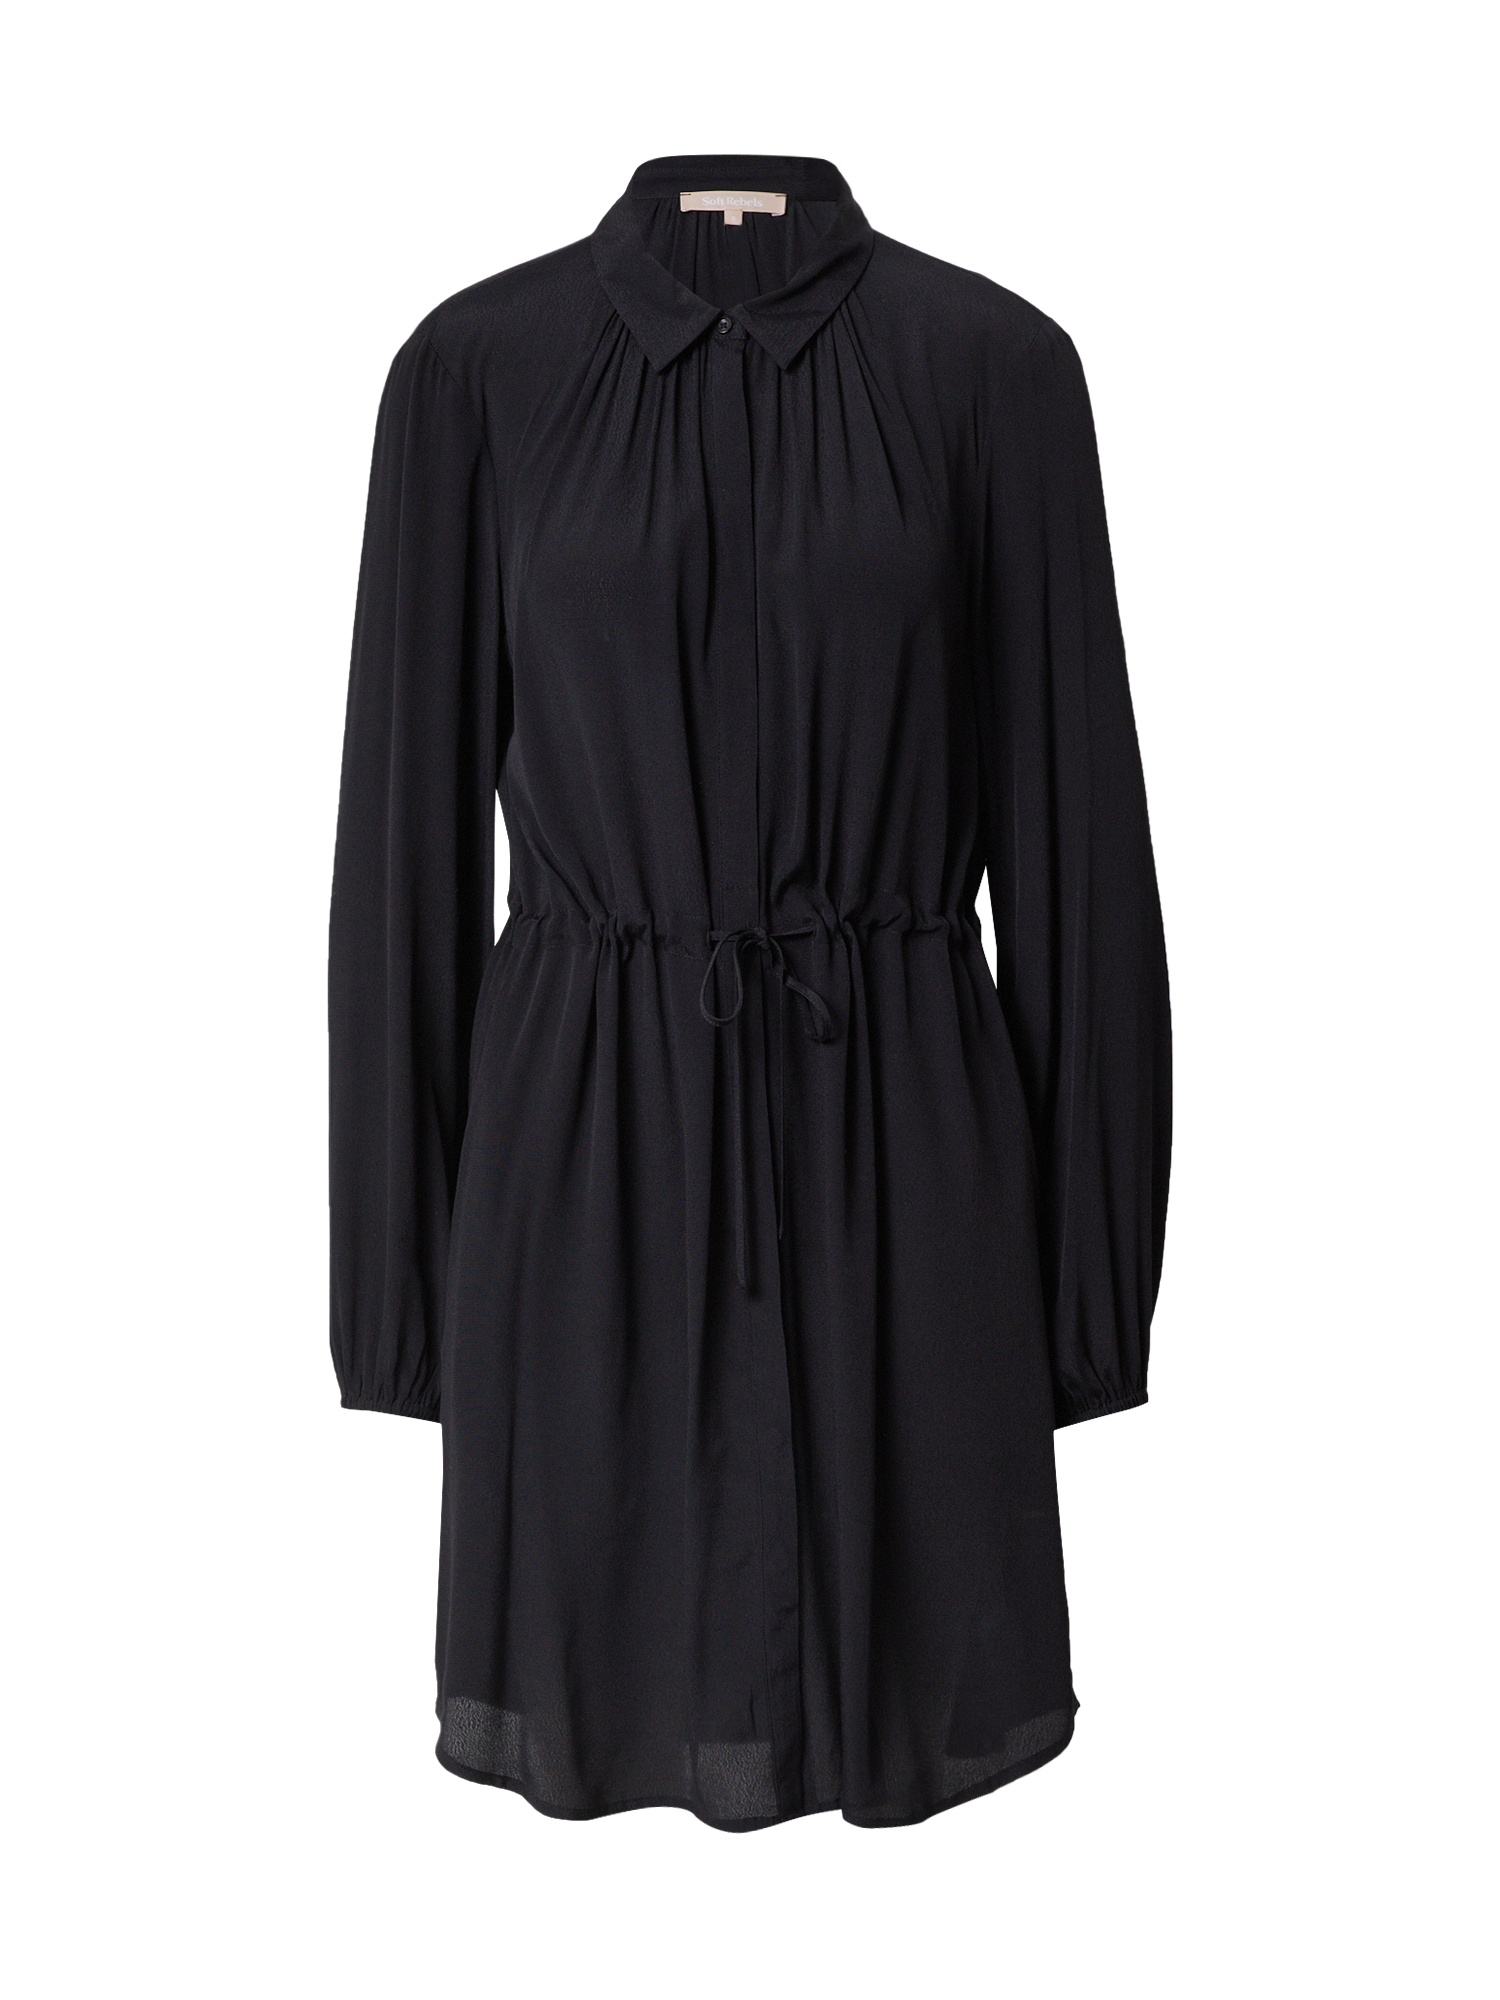 Odzież lOrEq Soft Rebels Sukienka koszulowa Aina w kolorze Czarnym 